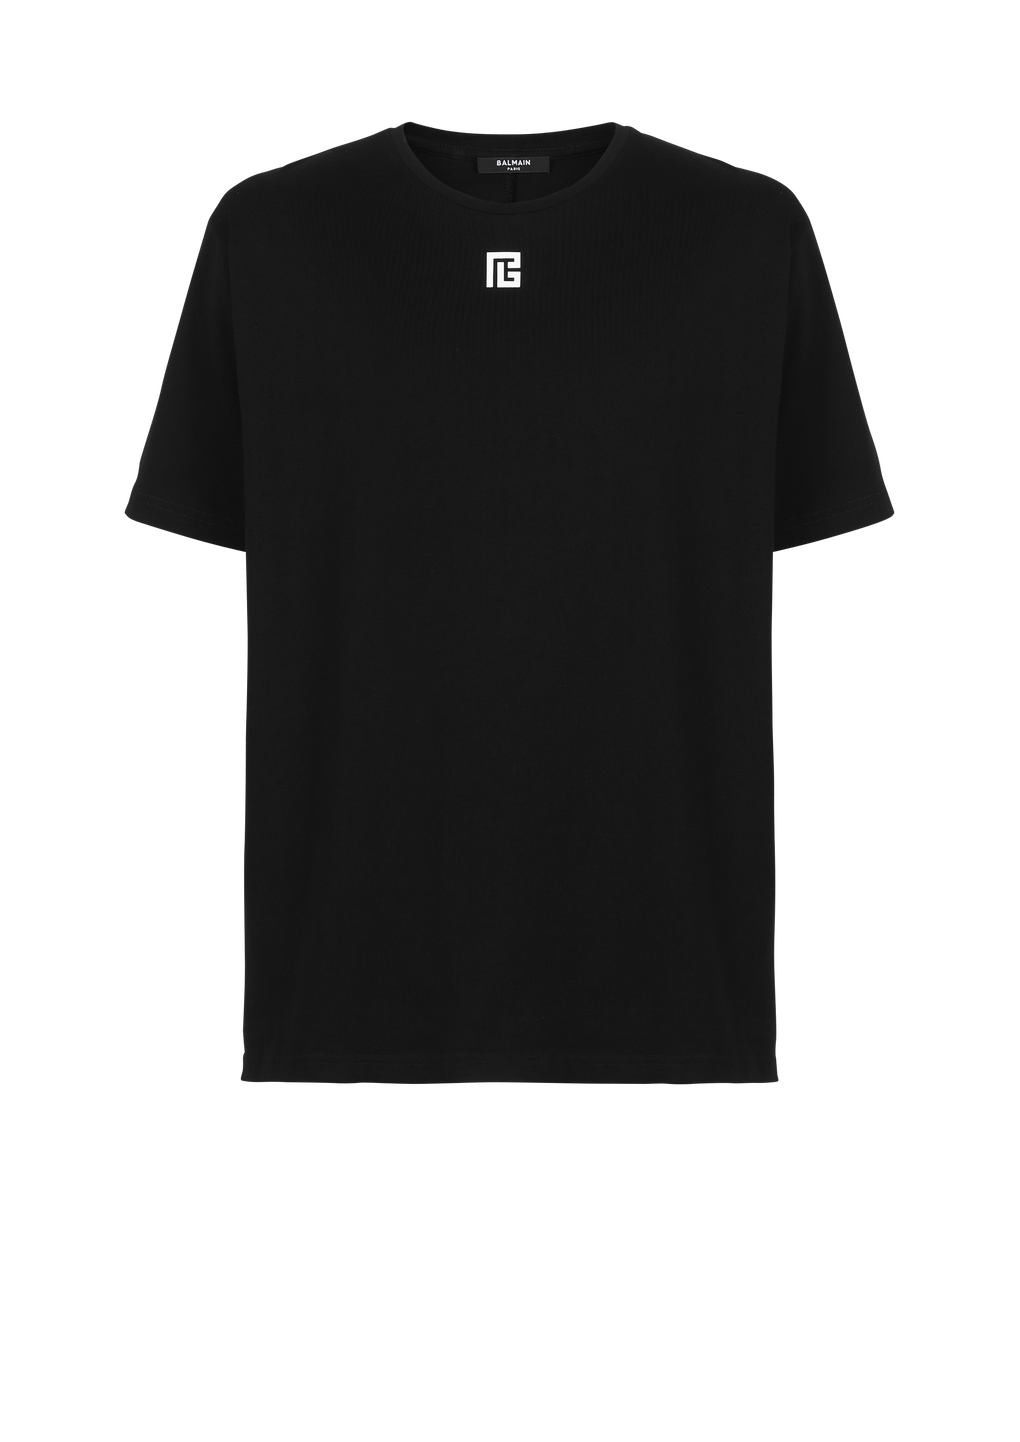 Oversized cotton T-shirt with maxi Balmain logo print, black, hi-res